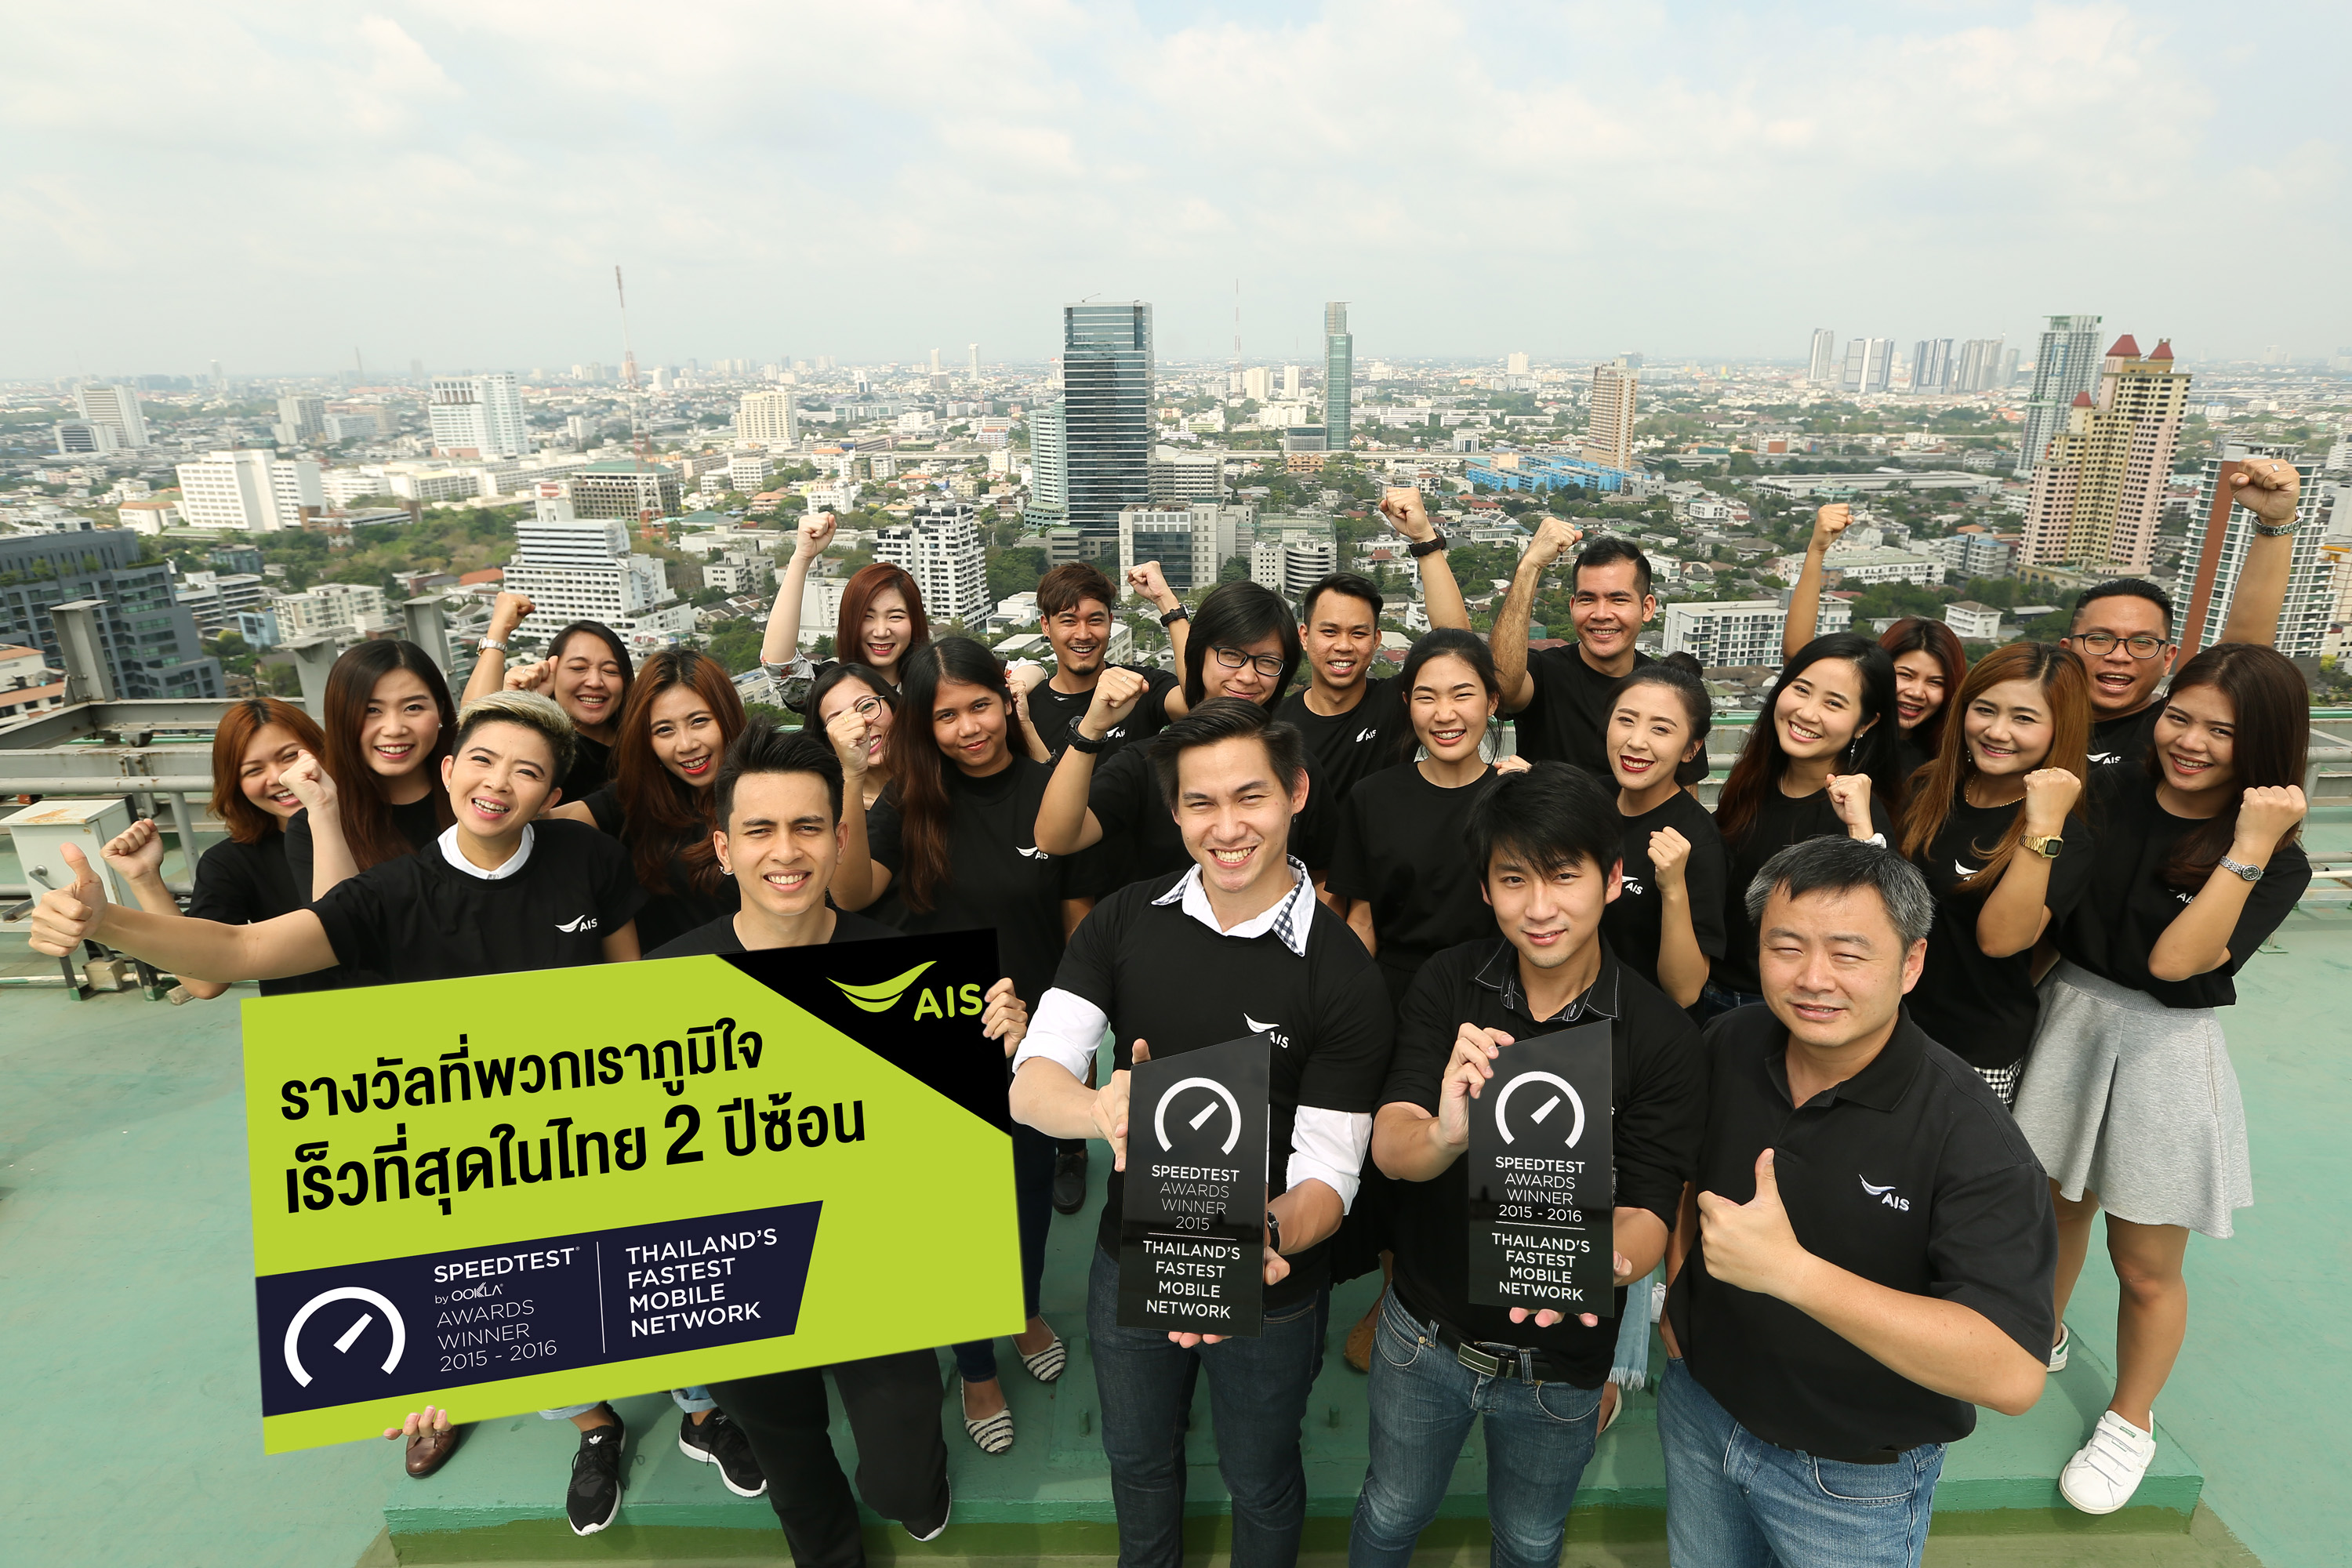 170310 Pic ชาวเอไอเอส ยืนยัน ผู้นำตัวจริง เครือข่ายมือถือ 4G เร็ว แรงที่สุด อันดับ 1 ของไทย 2 ปีซ้อน | 4g | AIS ผู้นำตัวจริง “เครือข่ายมือถือ 4G เร็ว แรงที่สุด” อันดับ 1 ของไทย 2 ปีซ้อนการันตีโดย Ookla SpeedTest